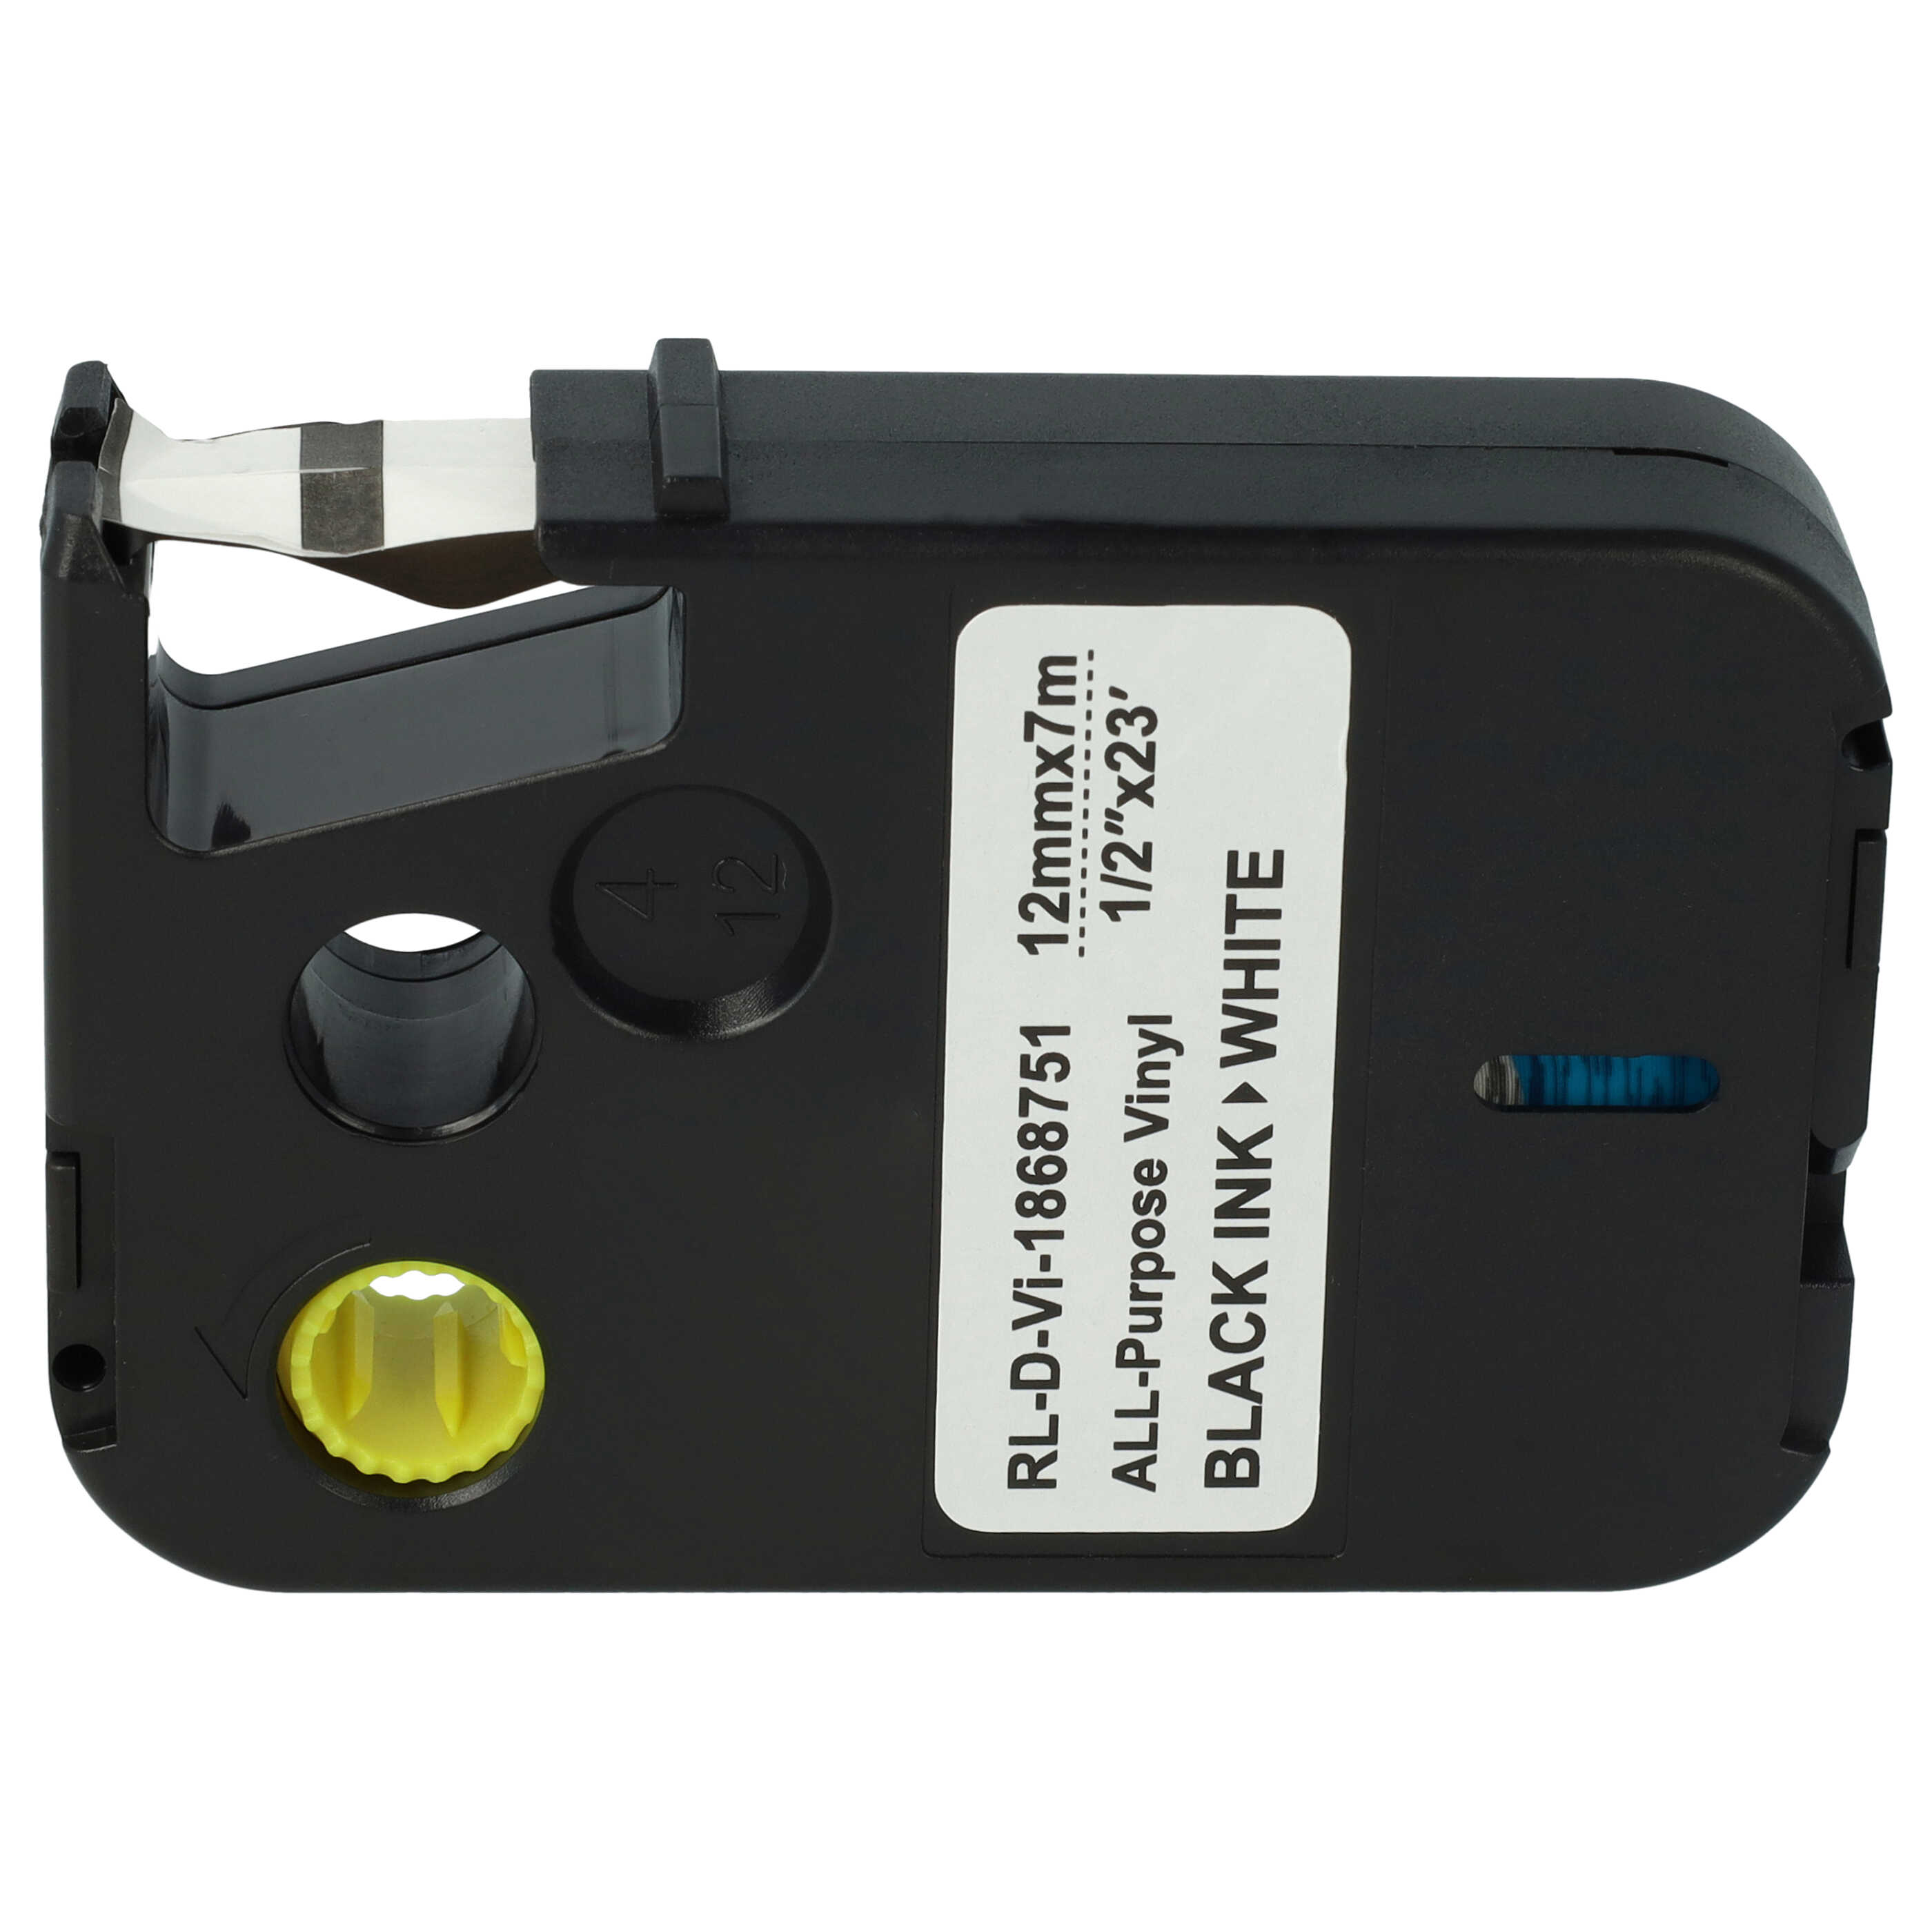 Cassette à ruban remplace Dymo 1868751 - 12mm lettrage Noir ruban Blanc, vinyle tout usage